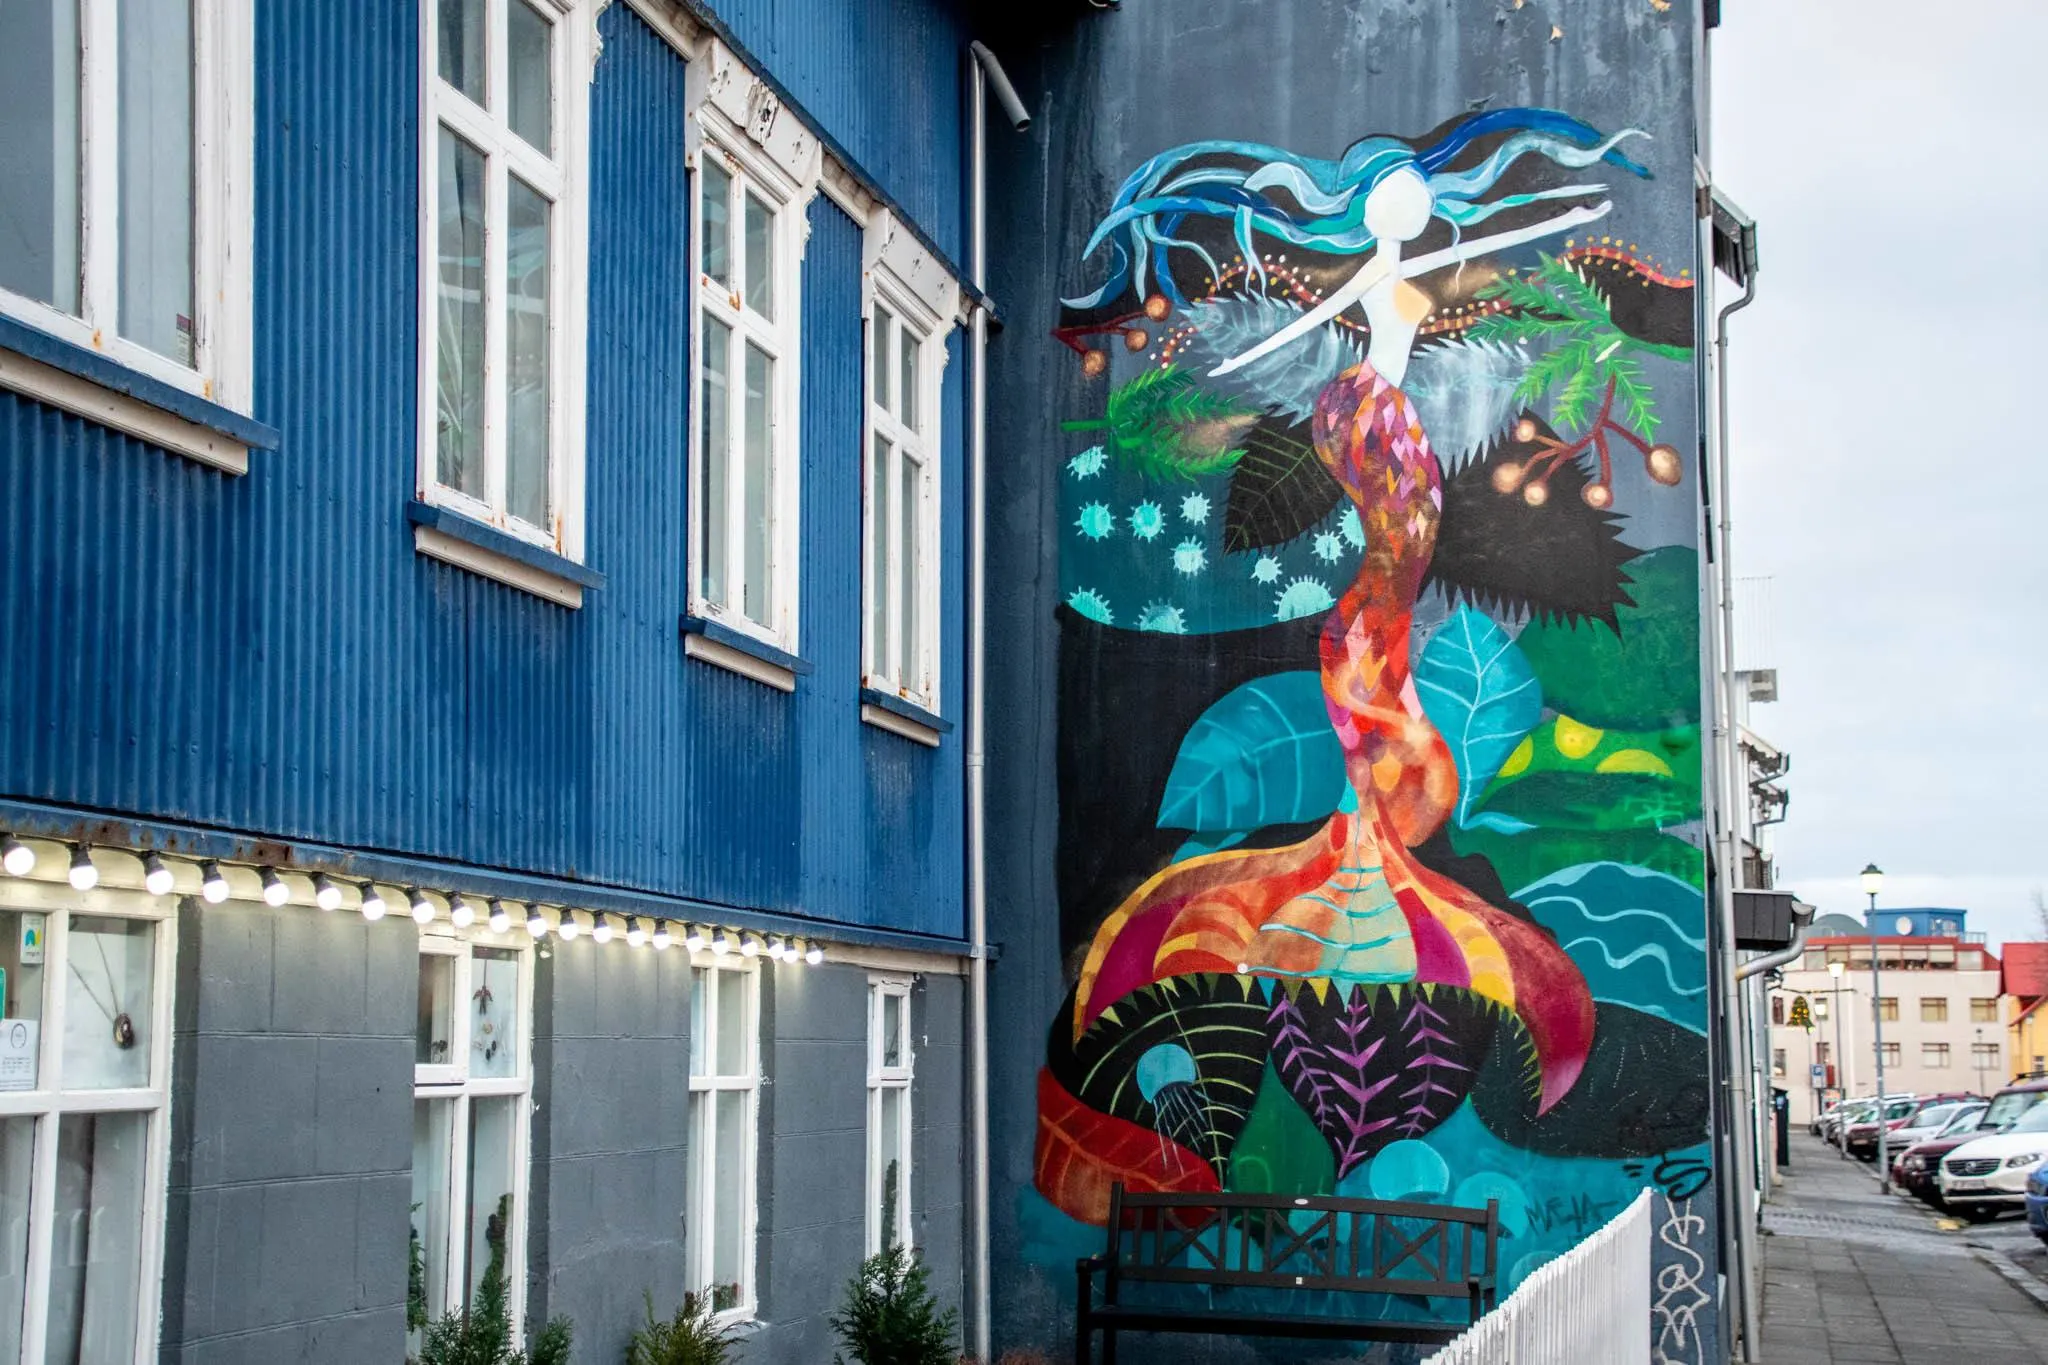 Icelandic Mermaid mural that is attributed to artist Raus